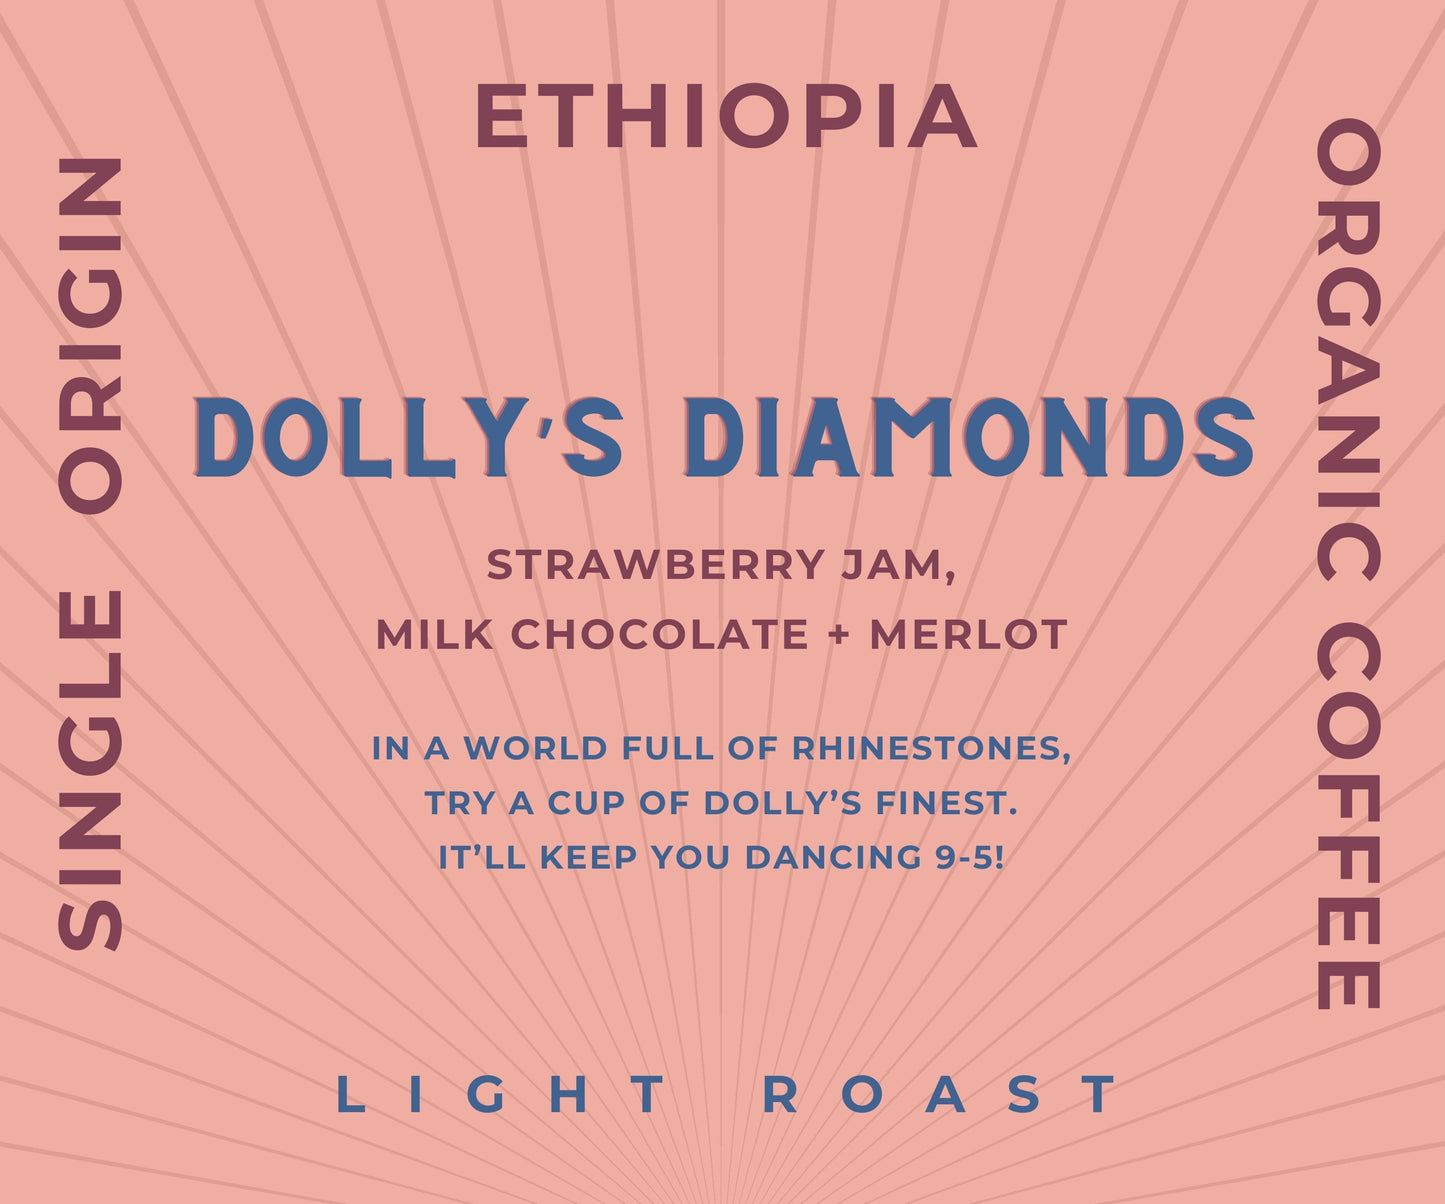 Dolly's Diamonds - Single Origin Ethiopia - Whole Sale Pricing